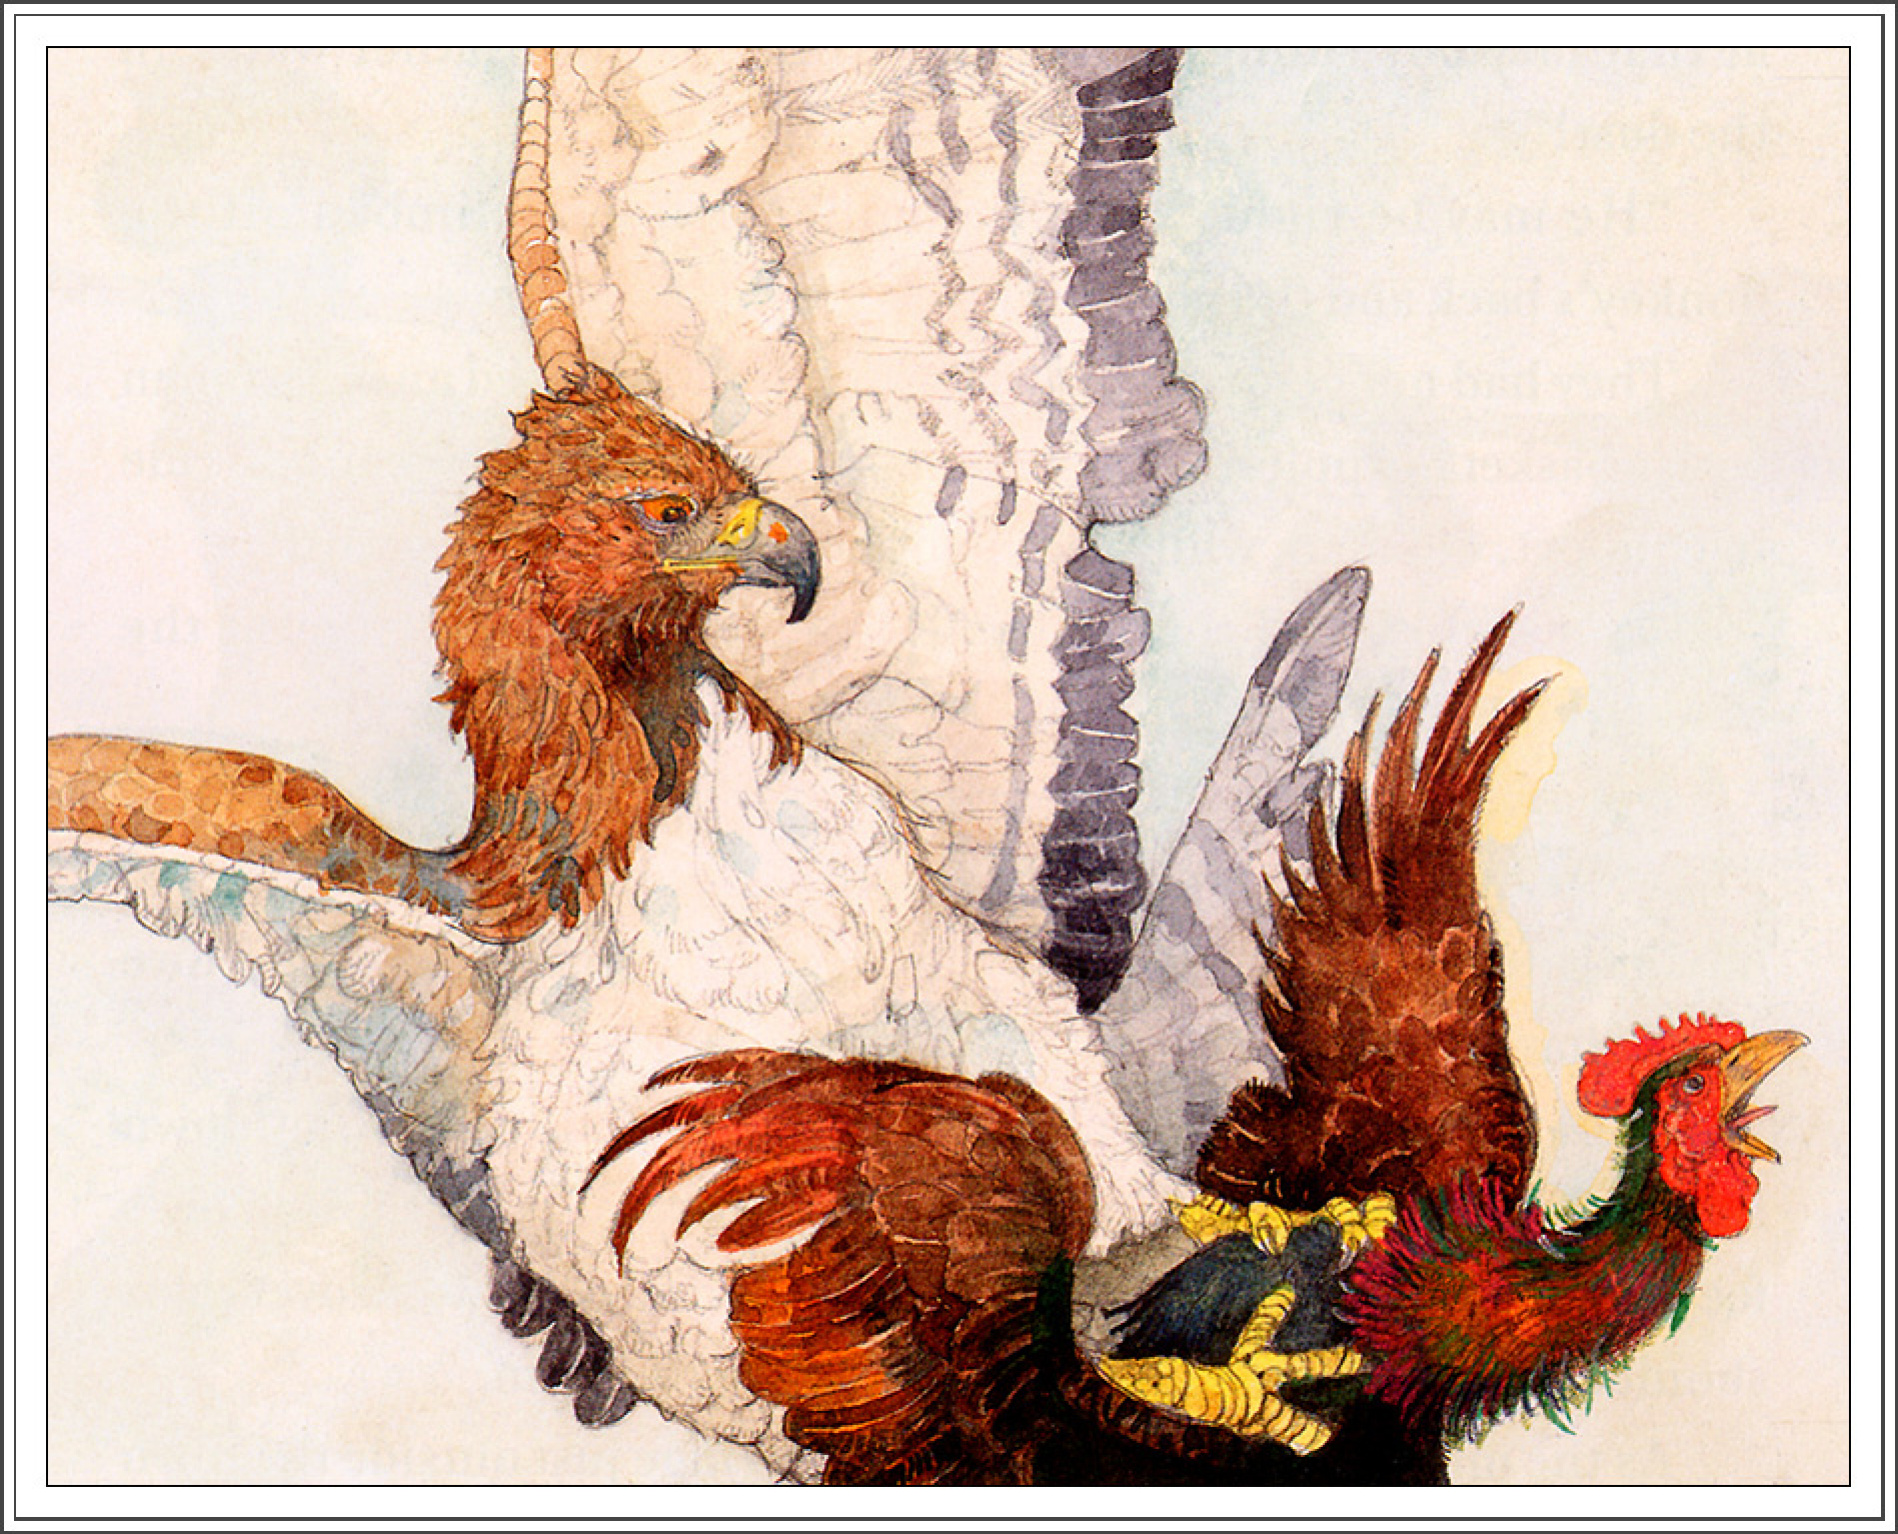 Jerry Pinkney Gallos y águila: Descripción de la obra | Arthive